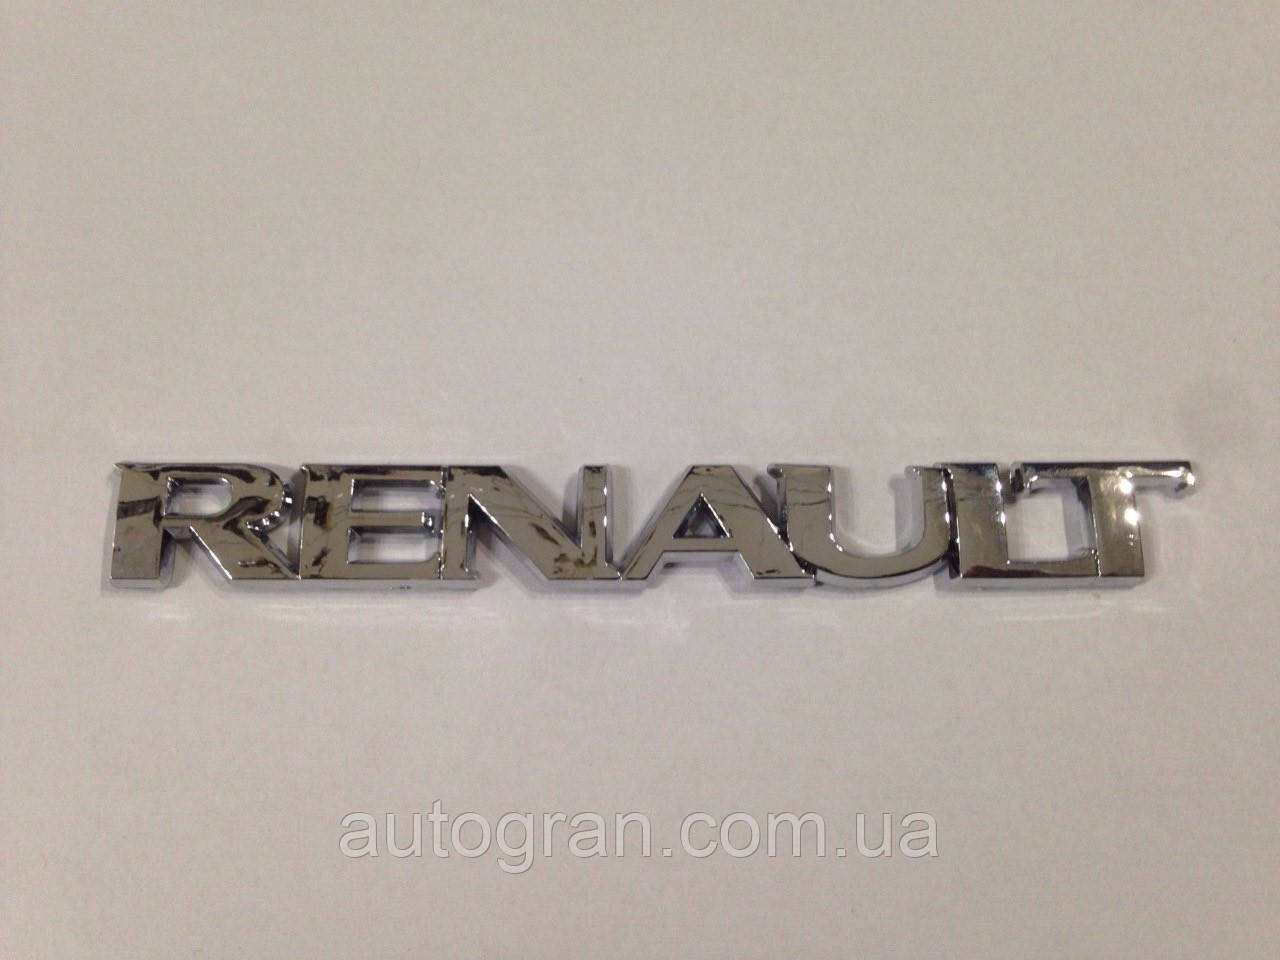 

Эмблема надпись багажника Renault